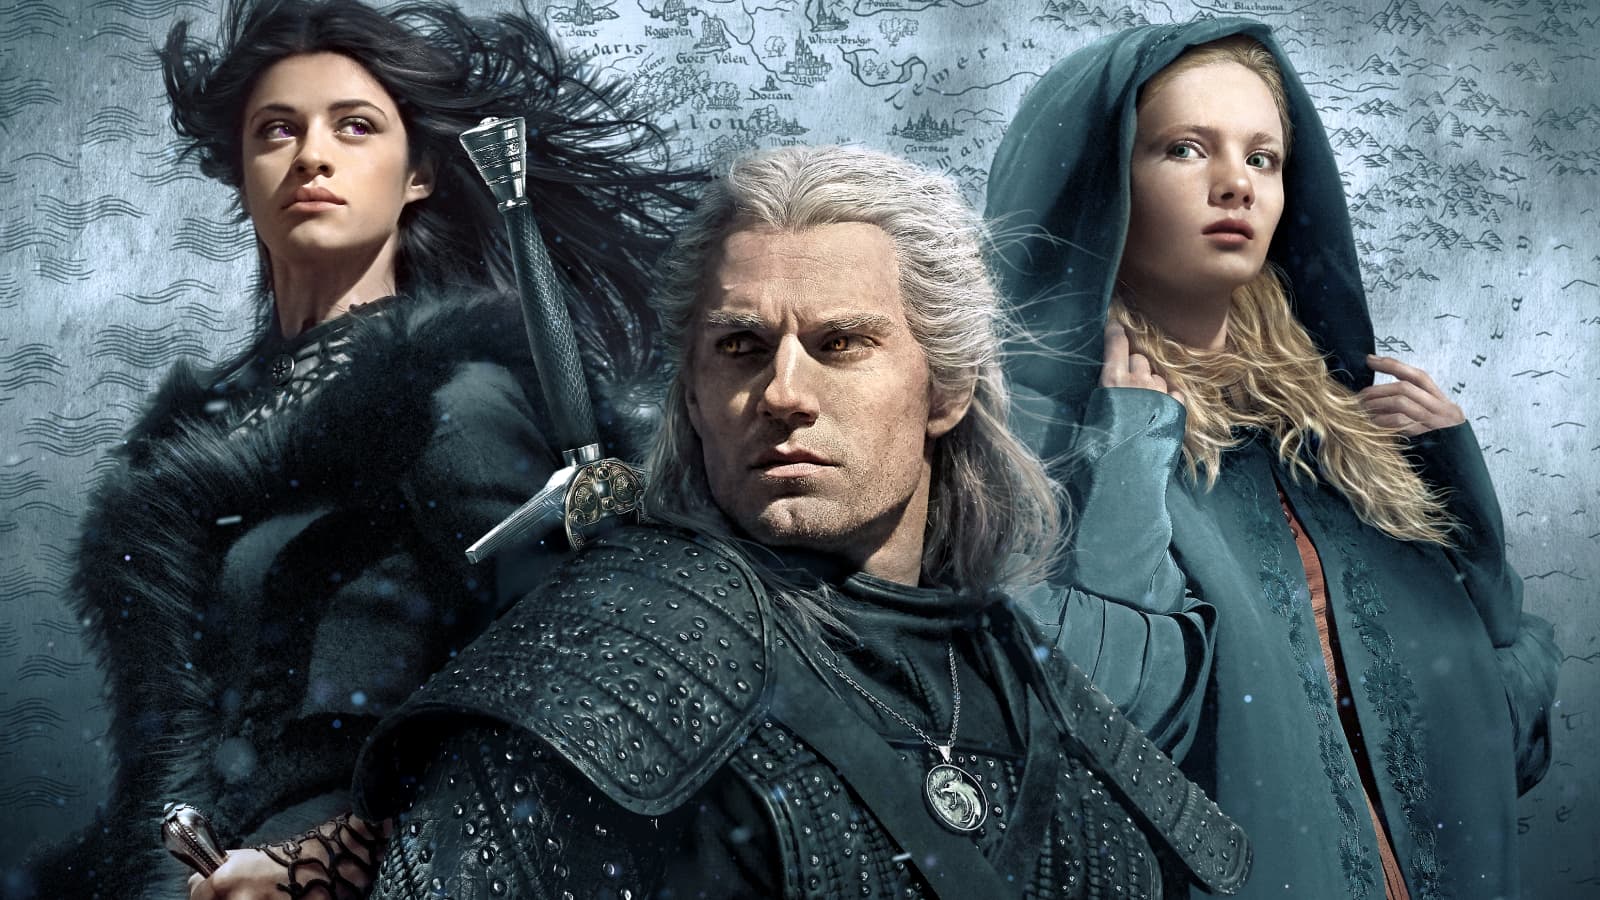 Affrontez monstres et merveilles avec The Witcher sur Netflix